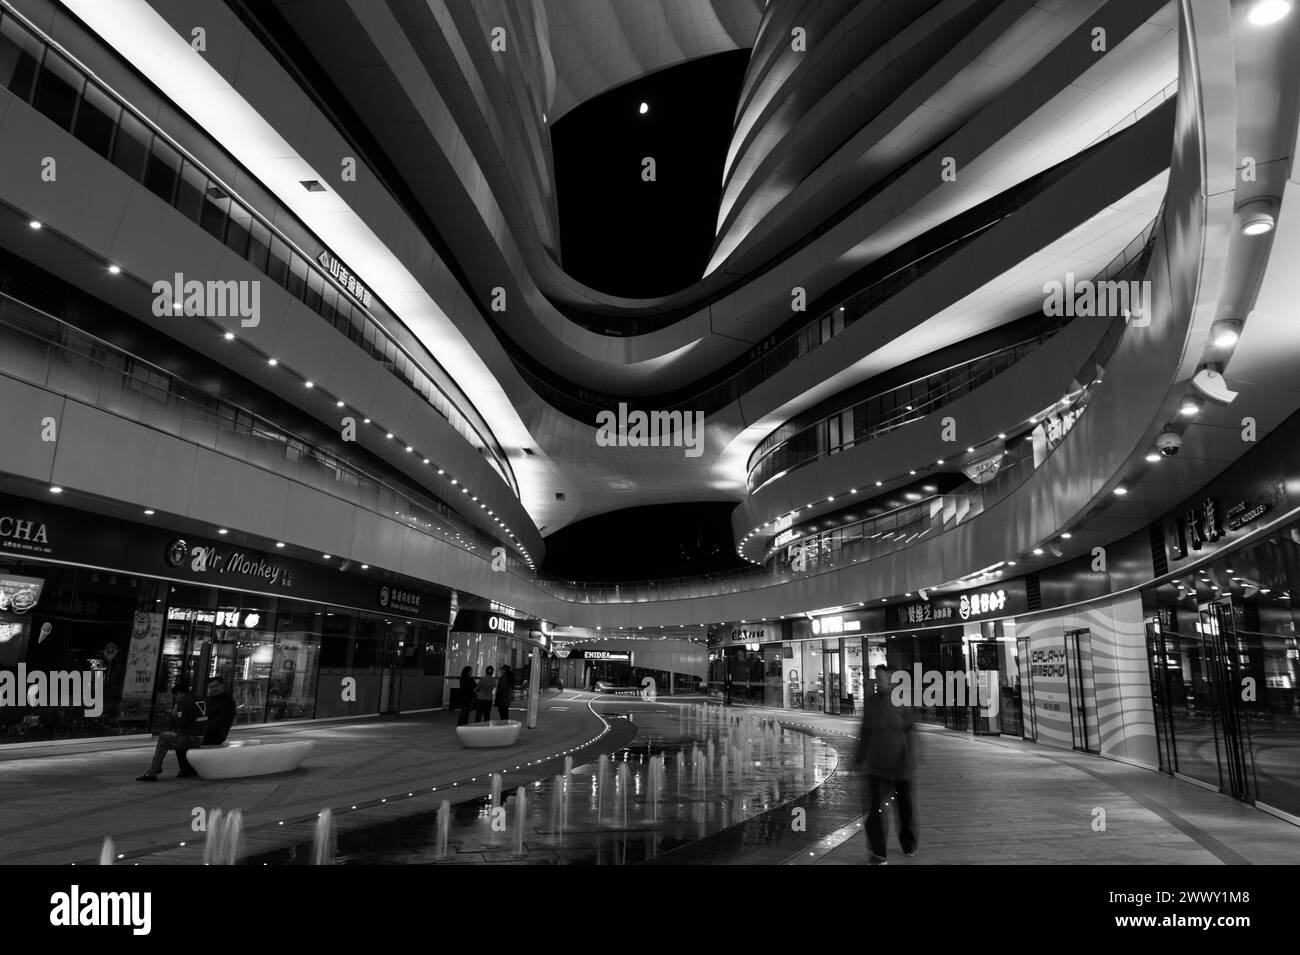 Galaxy soho, architecture, zaha hadid, night, beijing, china Stock Photo